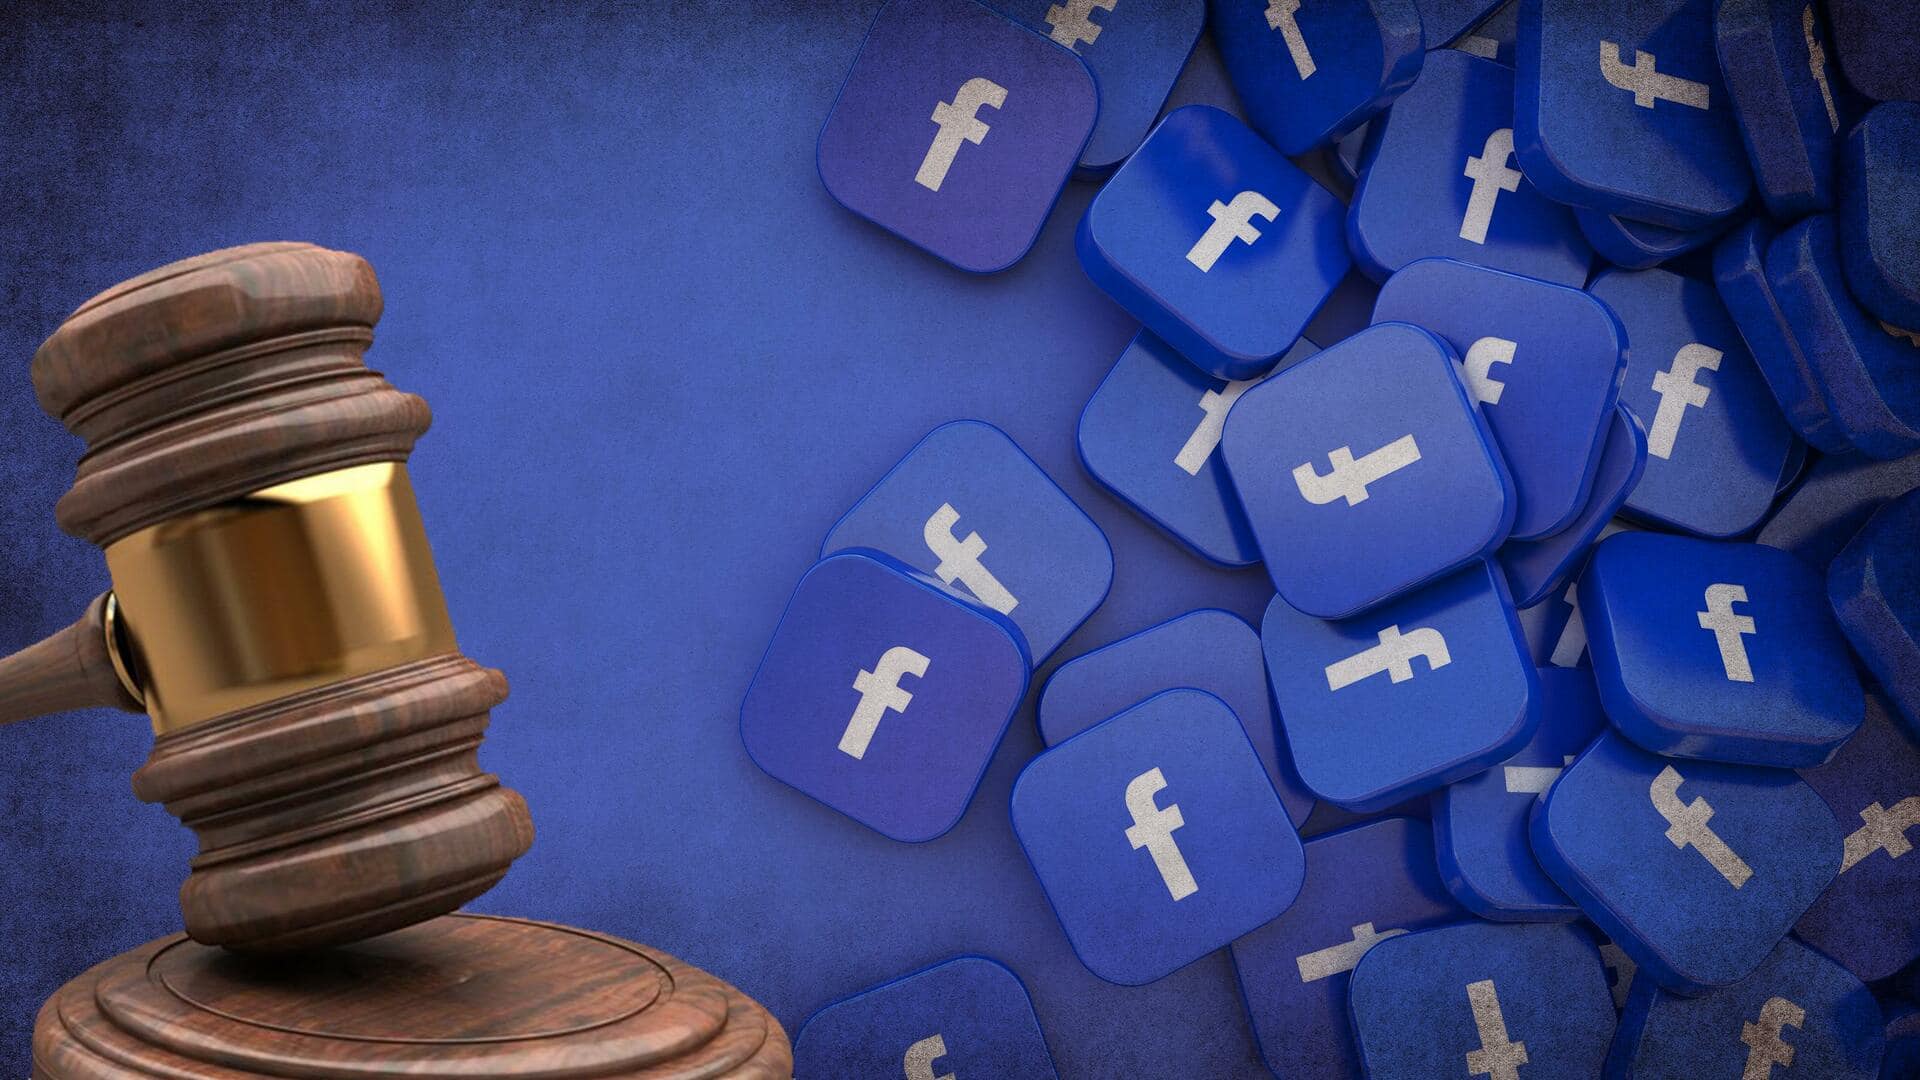 फेसबुक मॉडरेटर्स की छंटनी पर जज ने लगाई रोक, जानिए मामला